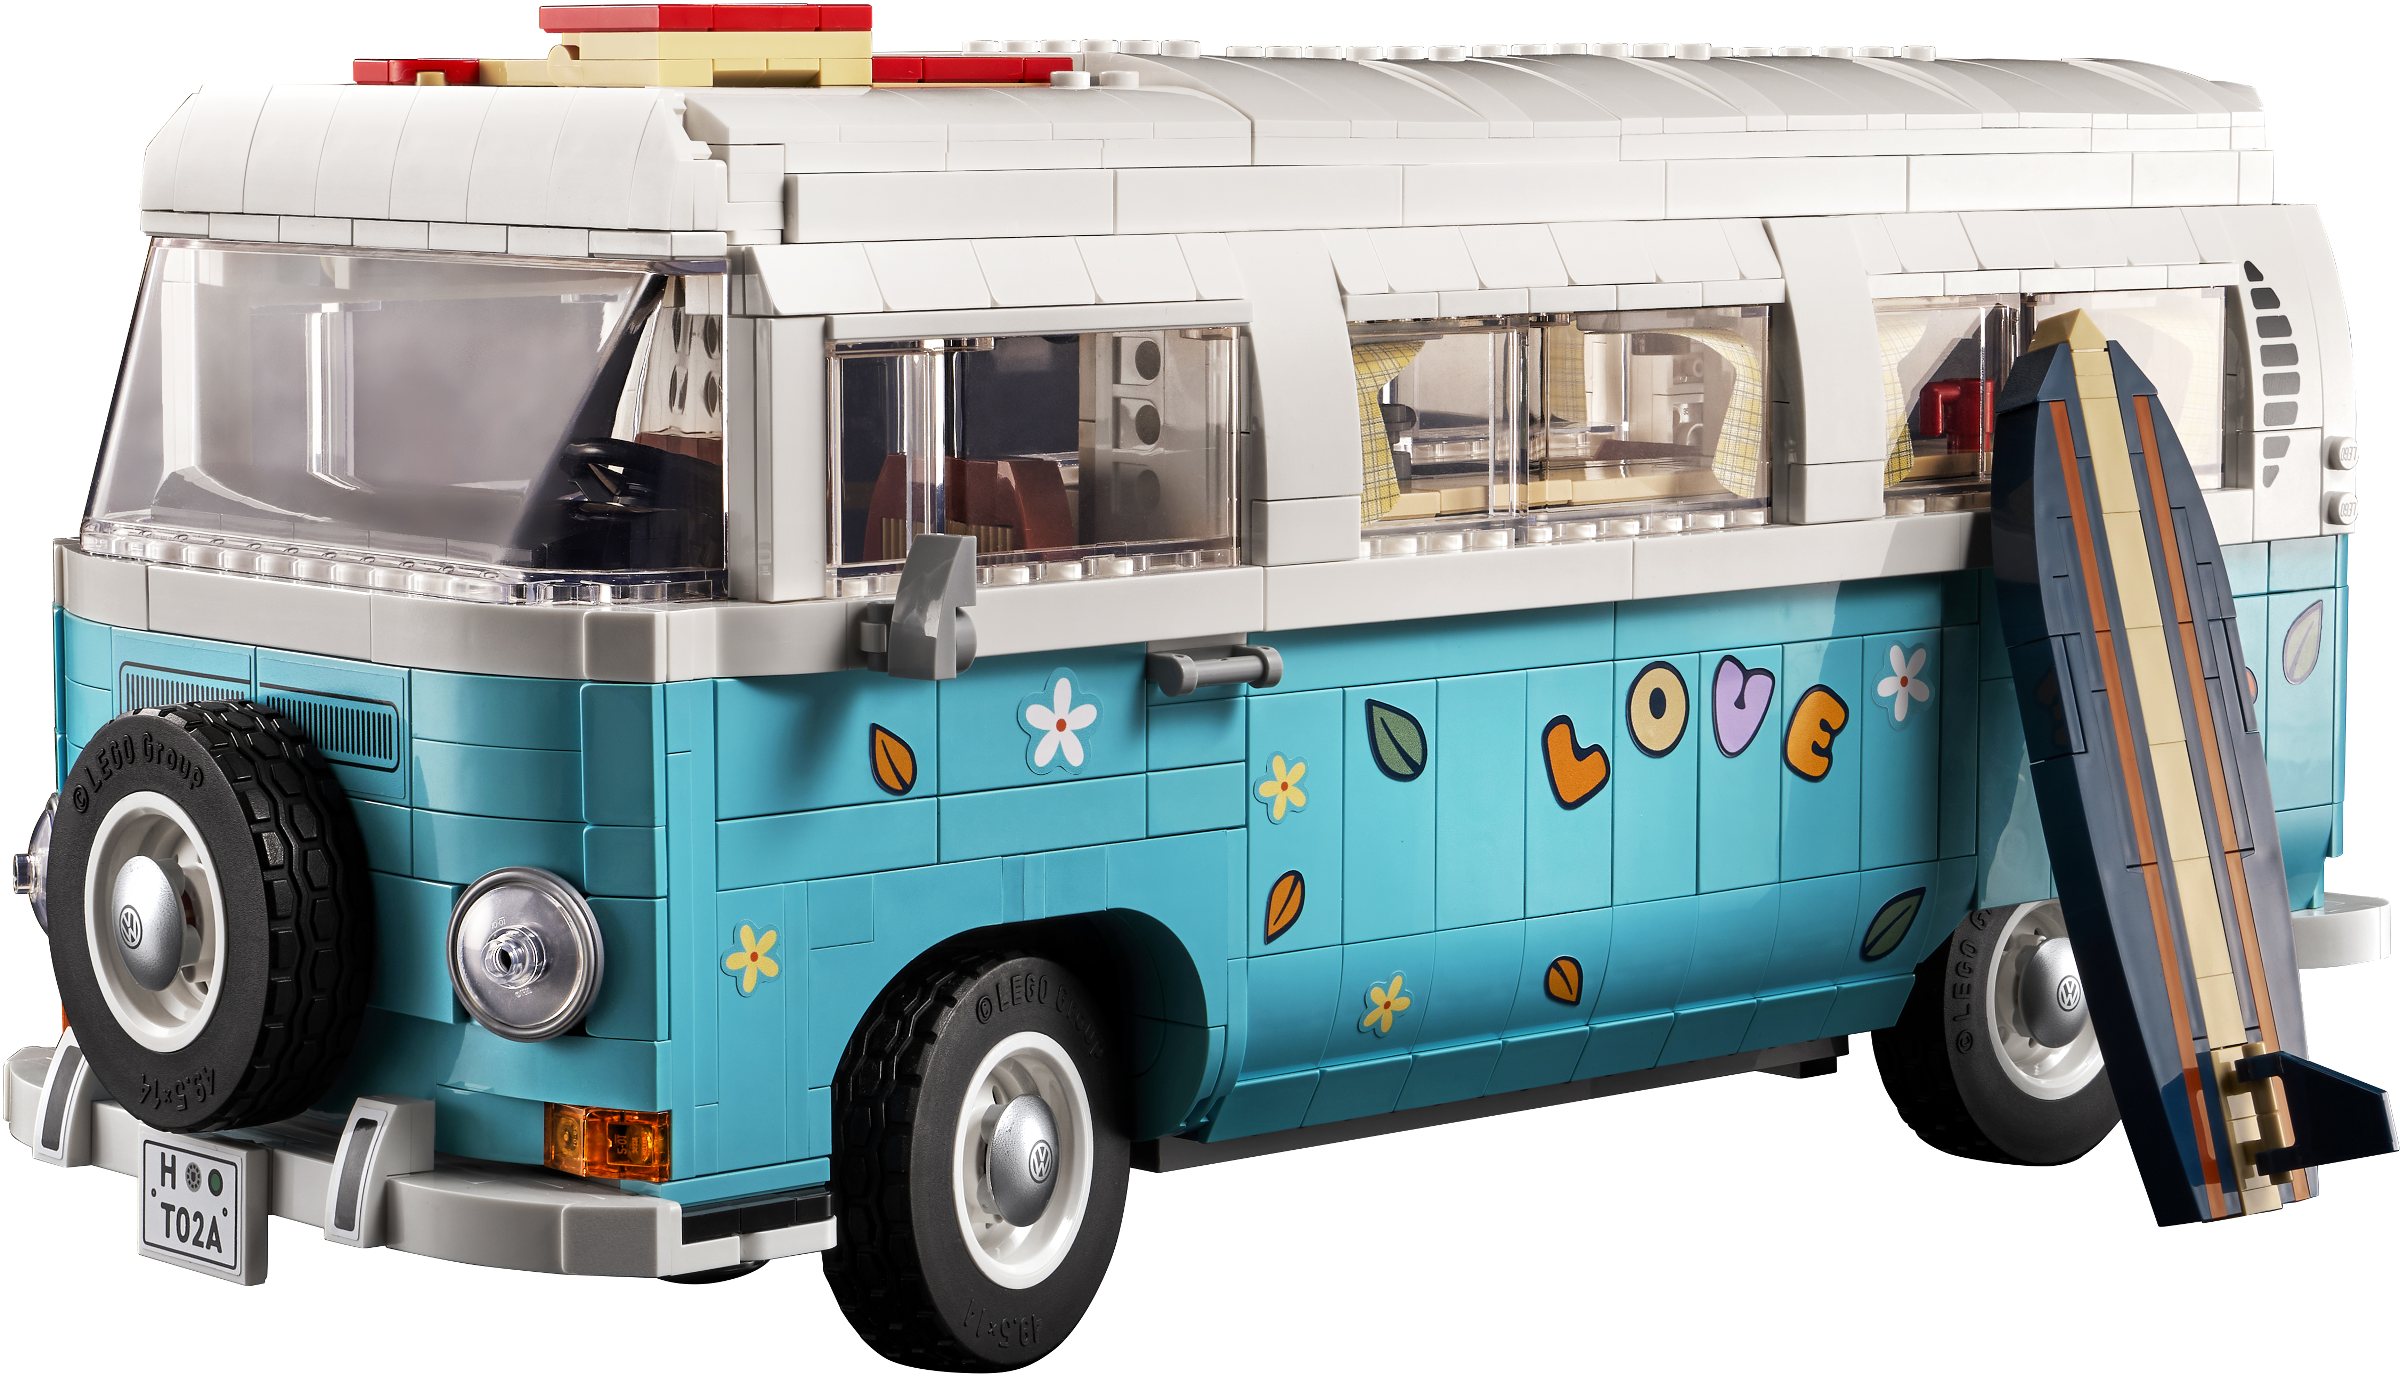 hypotheek Overweldigend Achtervoegsel Volkswagen T2 Camper Van revealed! | Brickset: LEGO set guide and database